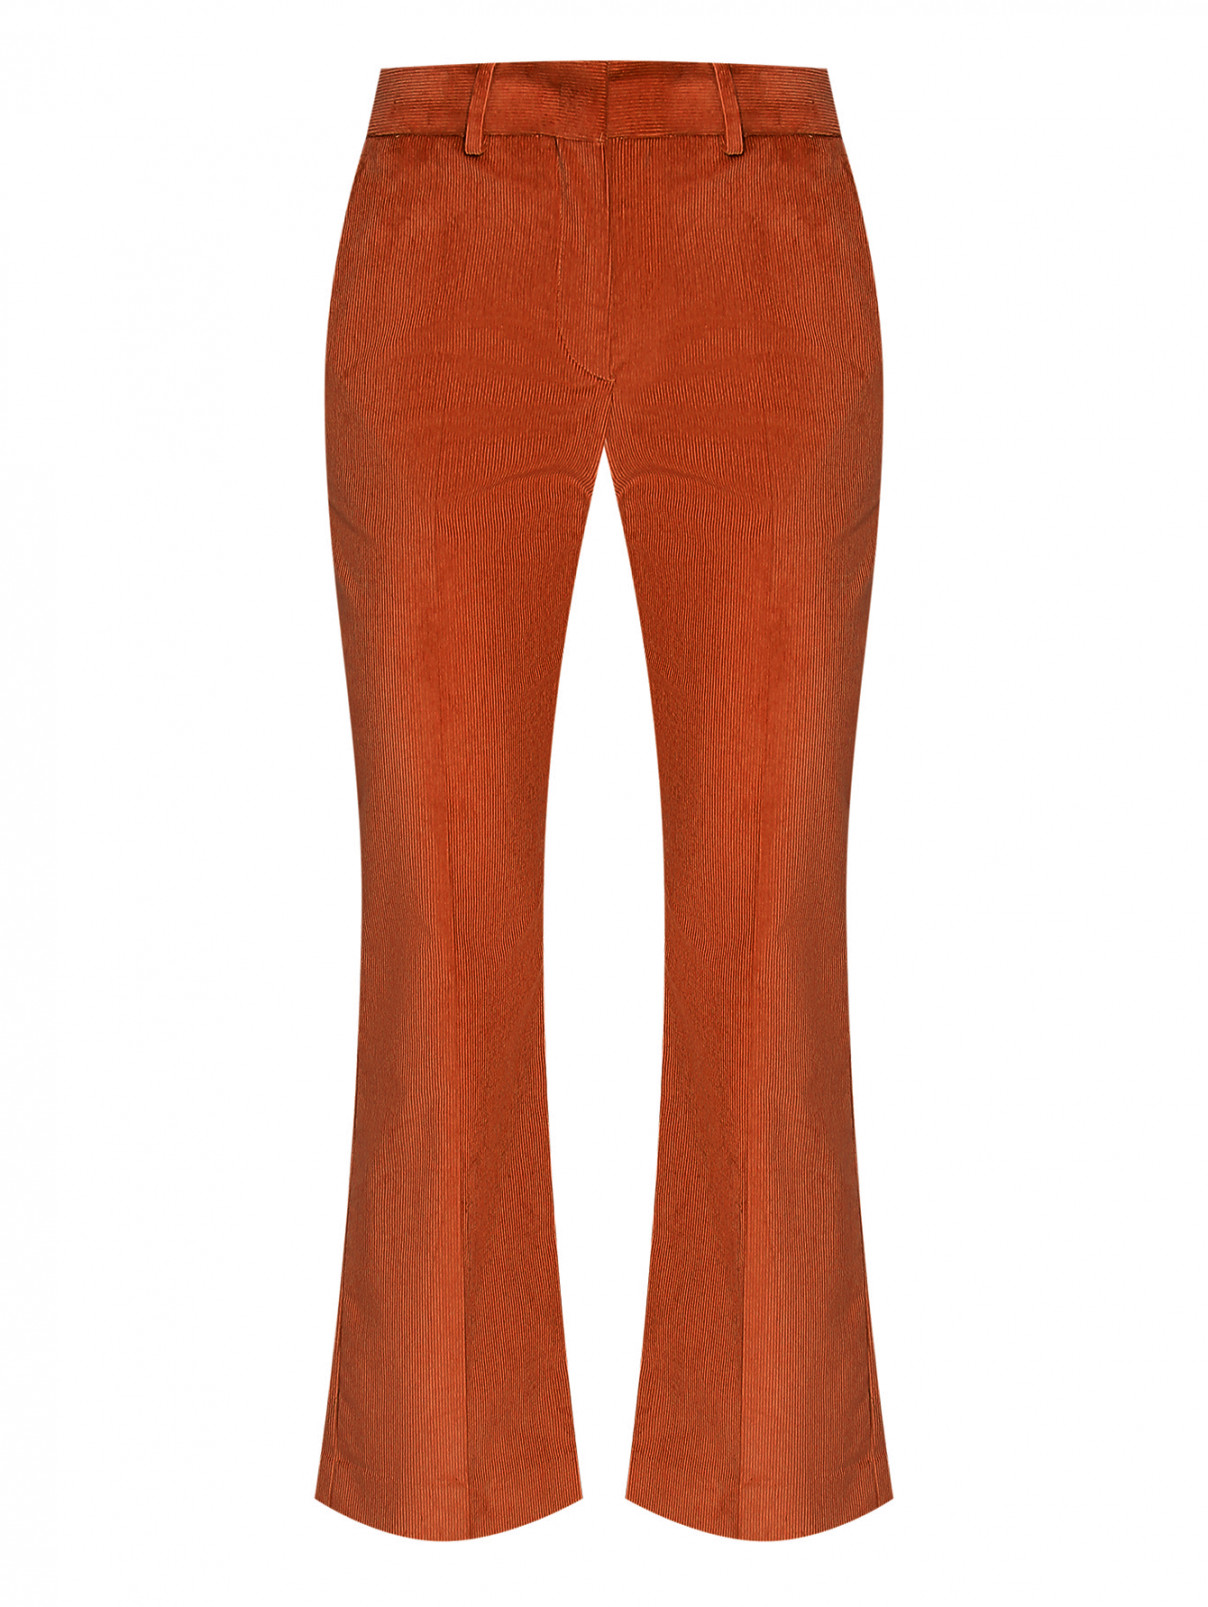 Вельветовые брюки со стрелками Paul Smith  –  Общий вид  – Цвет:  Коричневый